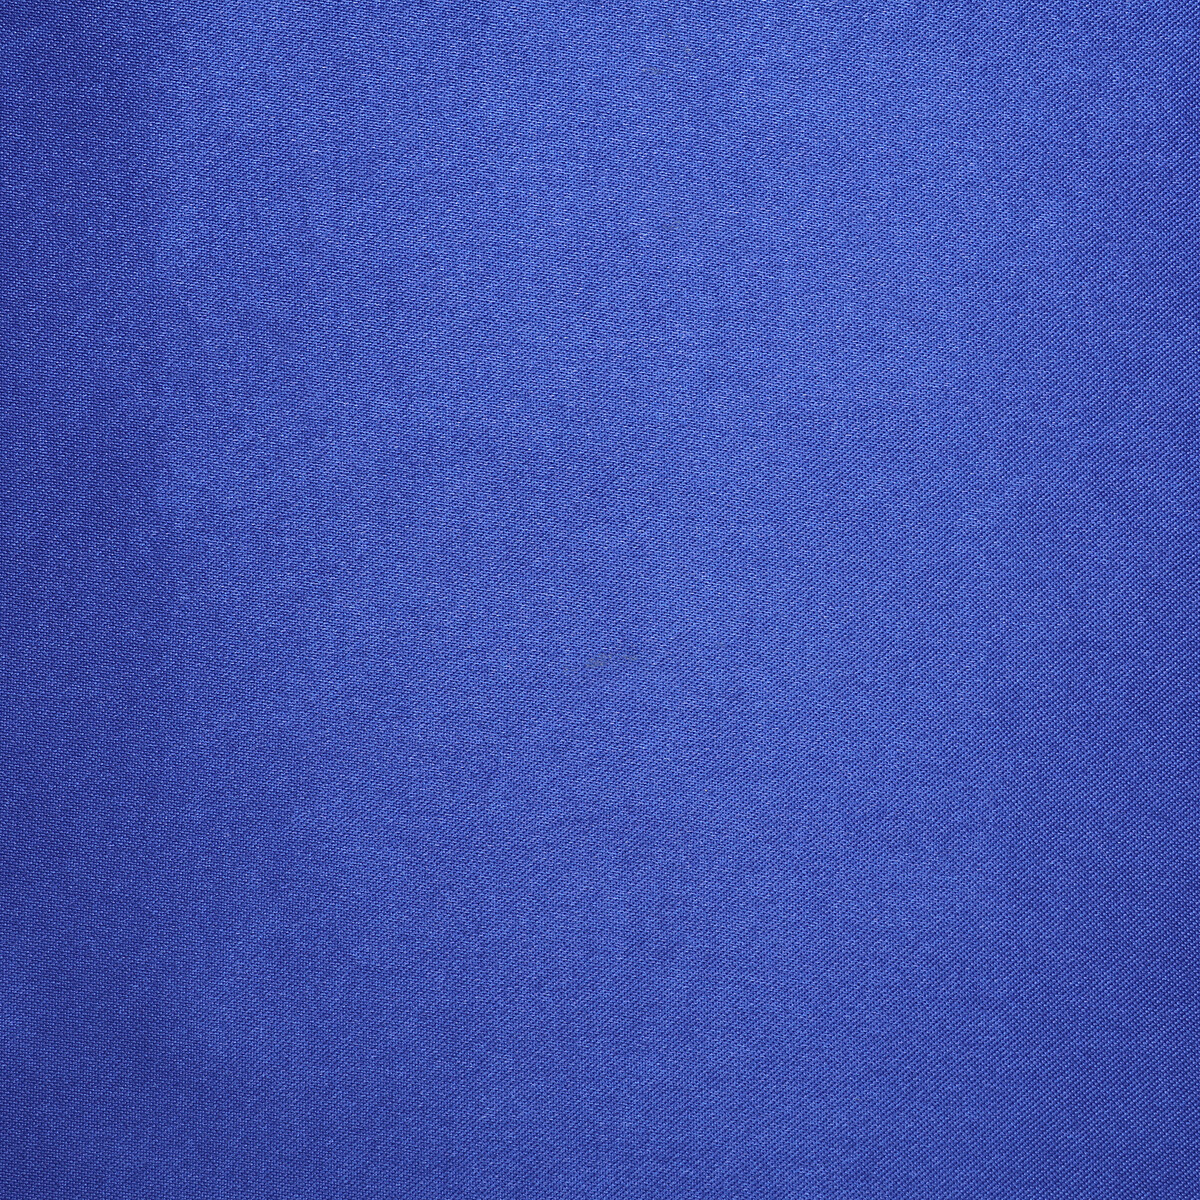 Лоскут для рукоделия, атлас однотонный синий 50*50 см